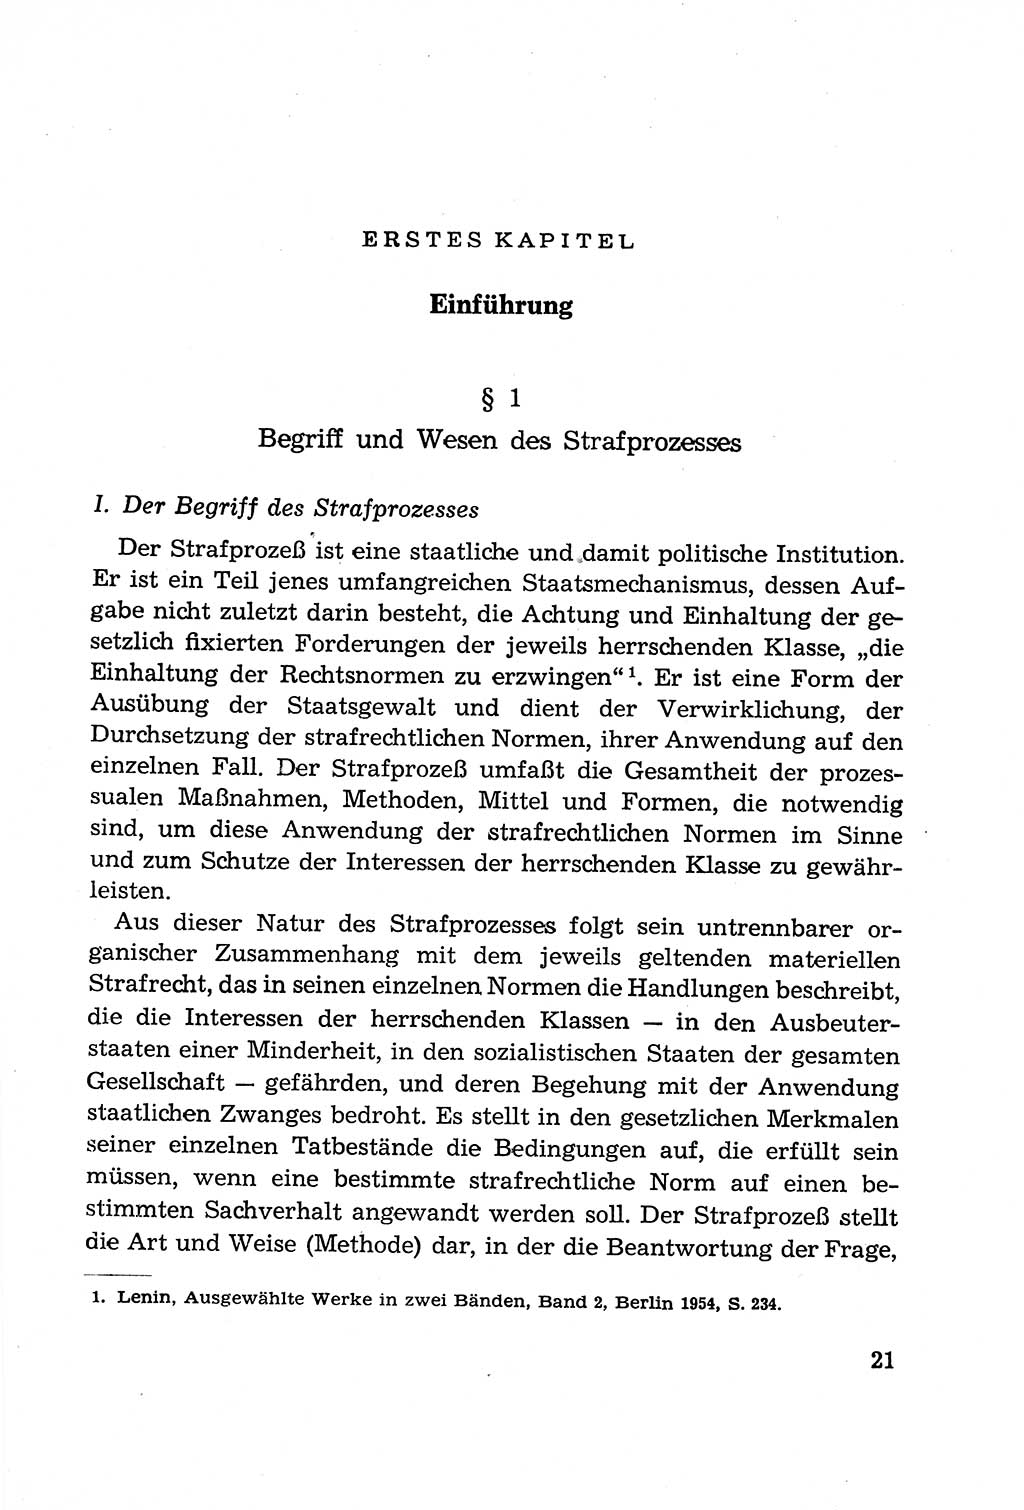 Leitfaden des Strafprozeßrechts der Deutschen Demokratischen Republik (DDR) 1959, Seite 21 (LF StPR DDR 1959, S. 21)